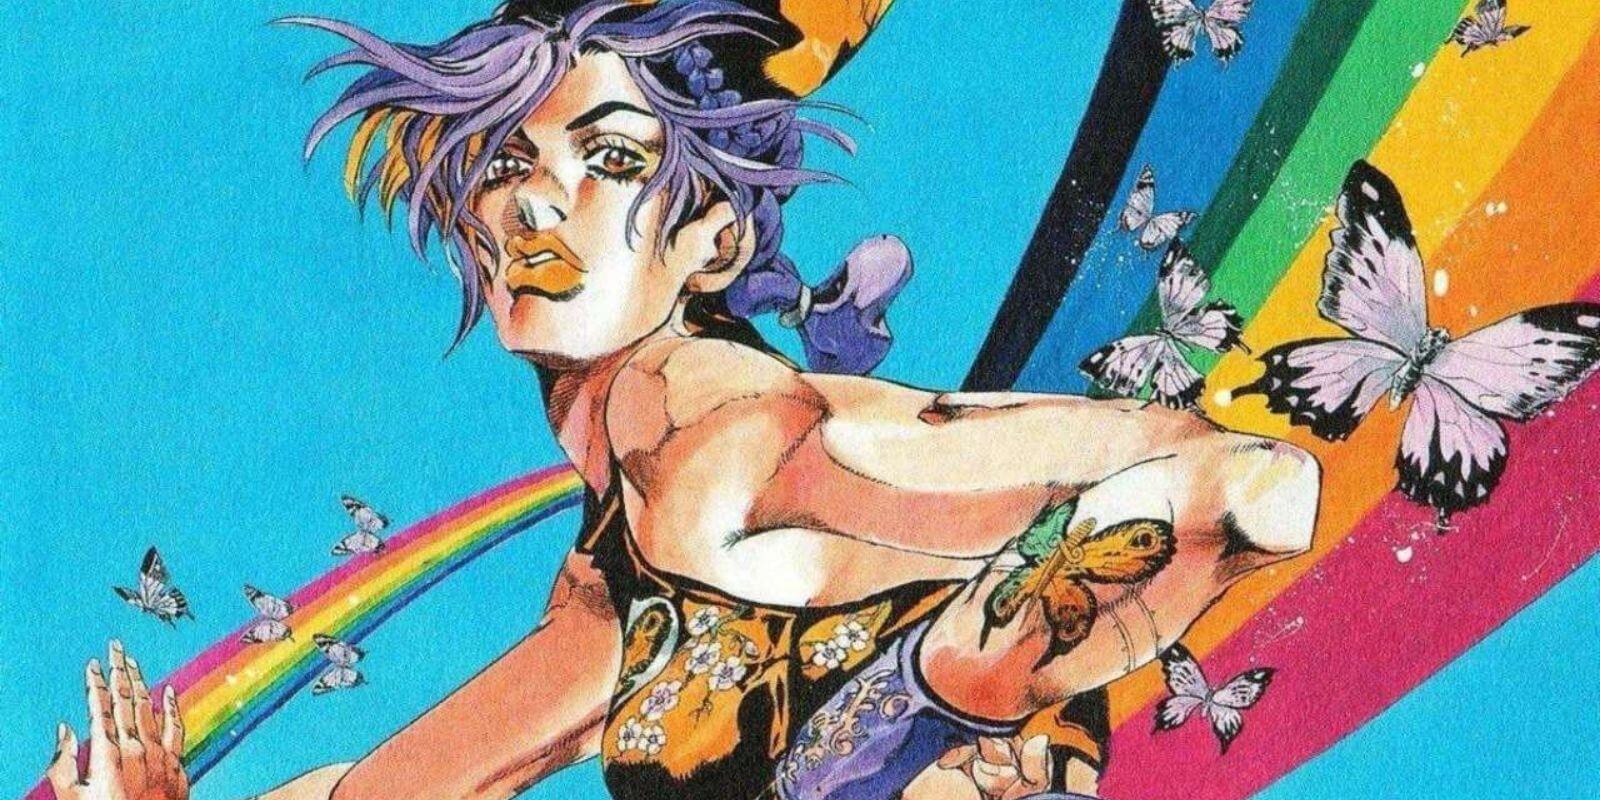 jolyne butterfly kujo araki art manga jojo Bizarre Adventure jjba